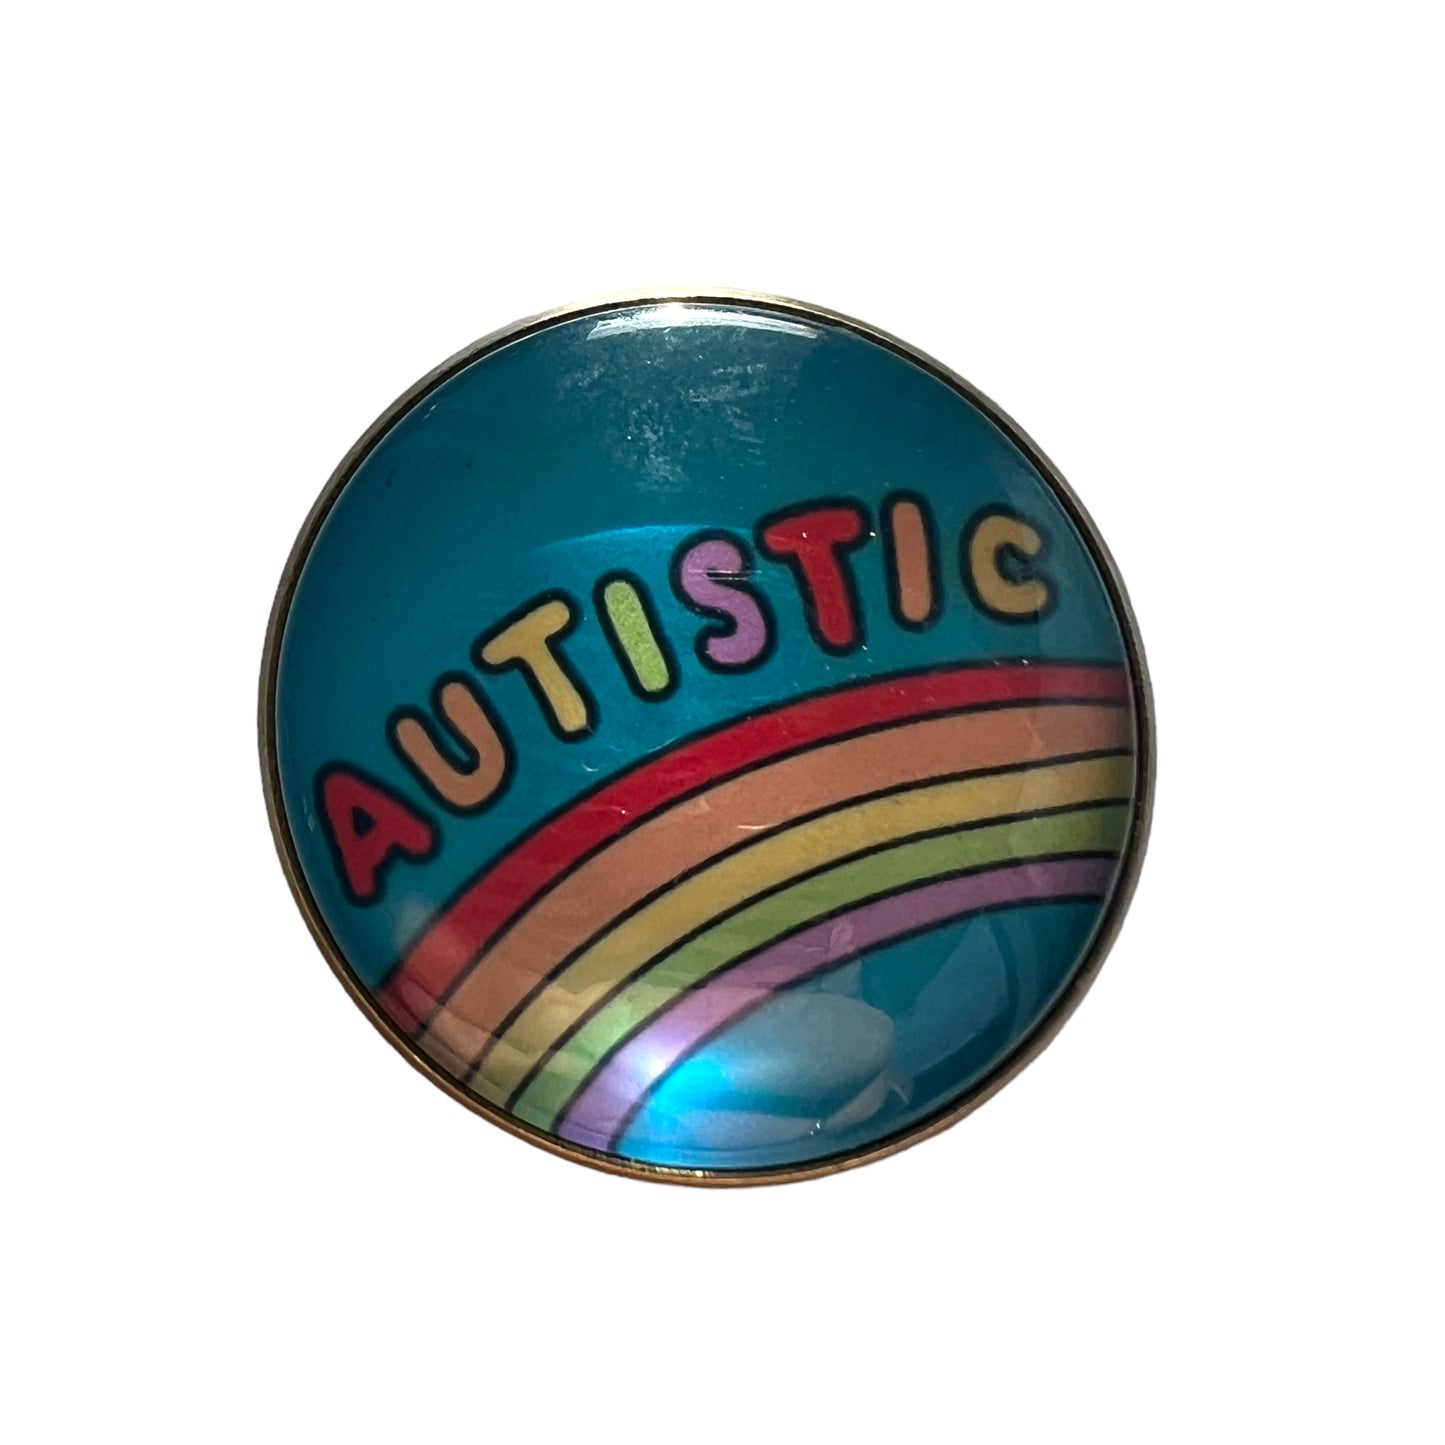 Pin — ‘Autistic’